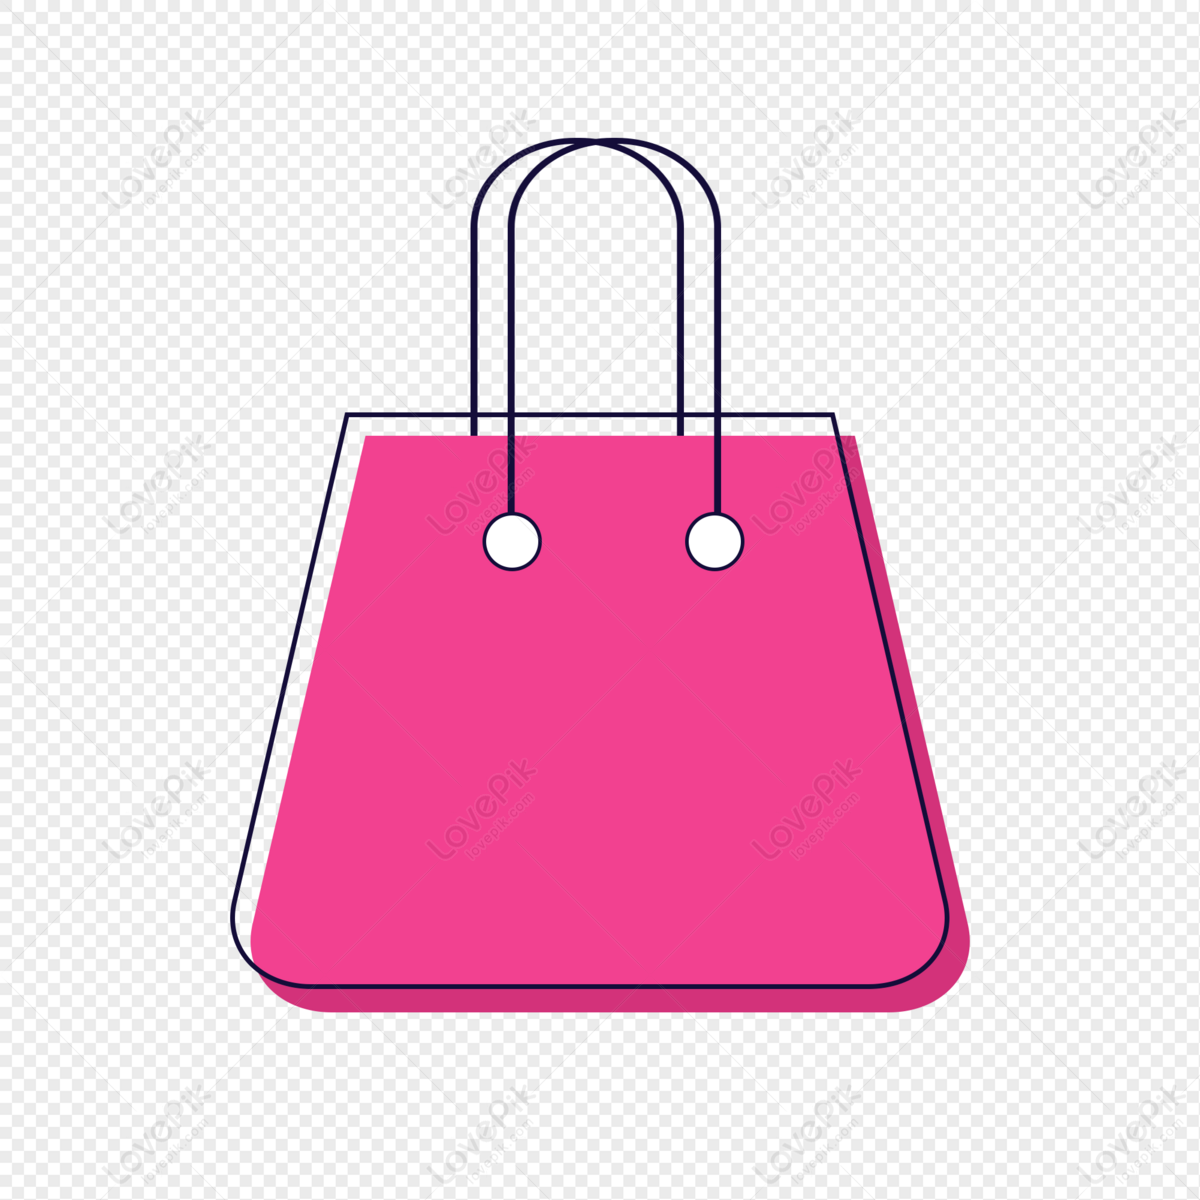 Shop green check bag symbol logo Royalty Free Vector Image